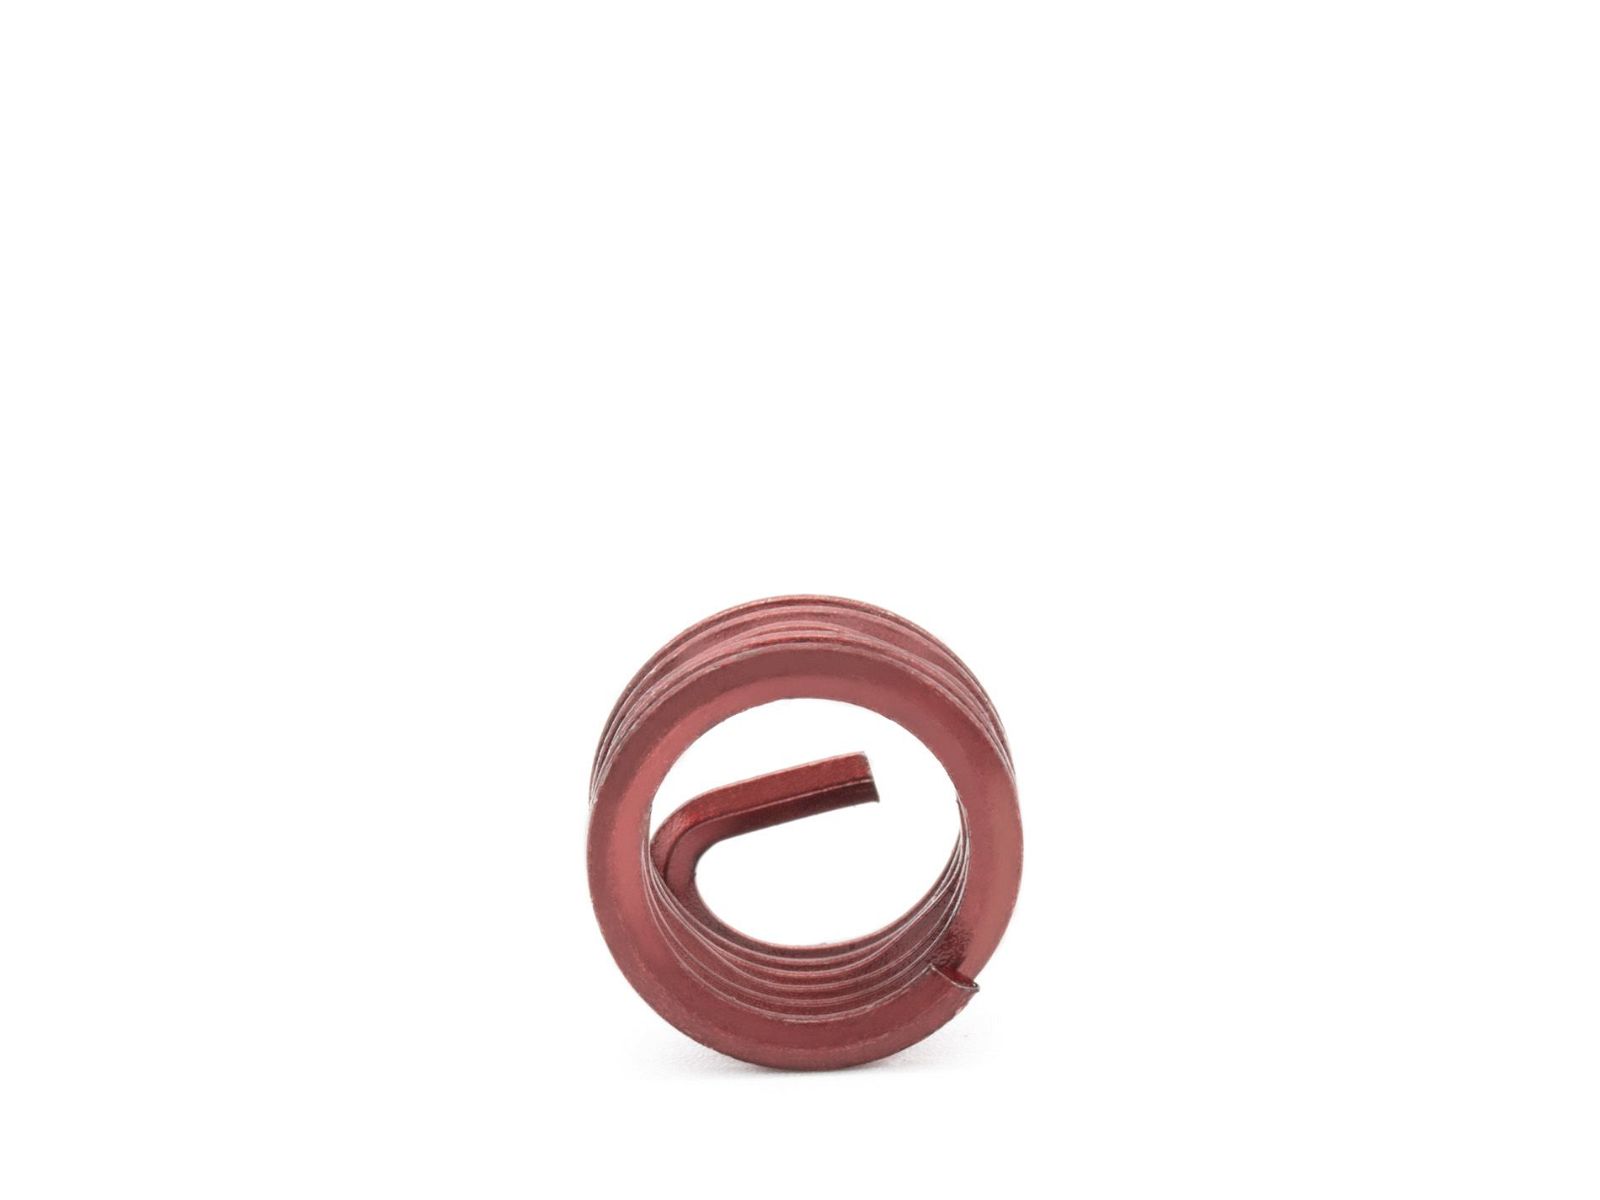 BaerCoil Wire Thread Inserts BSF 1/2 x 16 - 1.0 D (12.7 mm) - screw grip (screw locking) - 100 pcs.